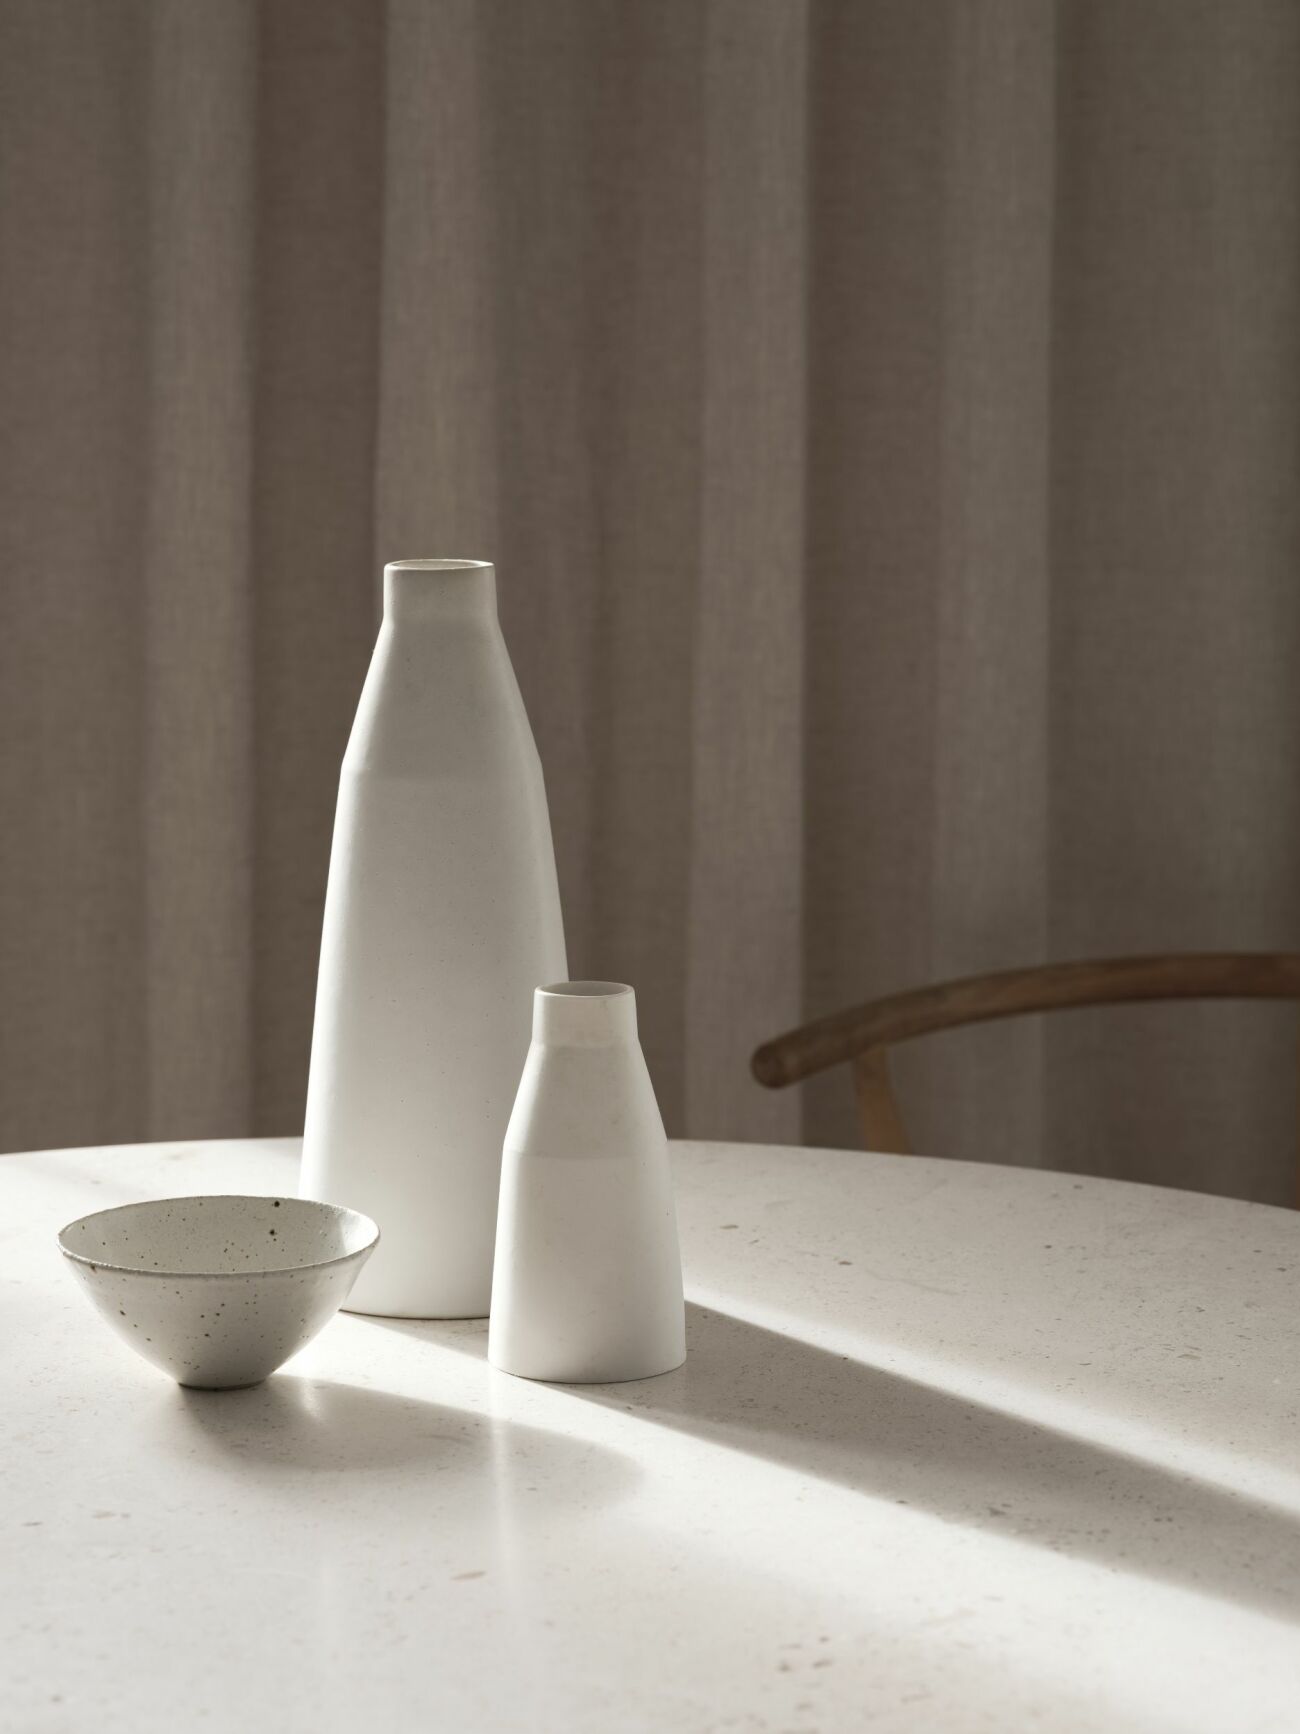 Vaser från Anna Lerinder och keramikskål från Manos shop and workshop.